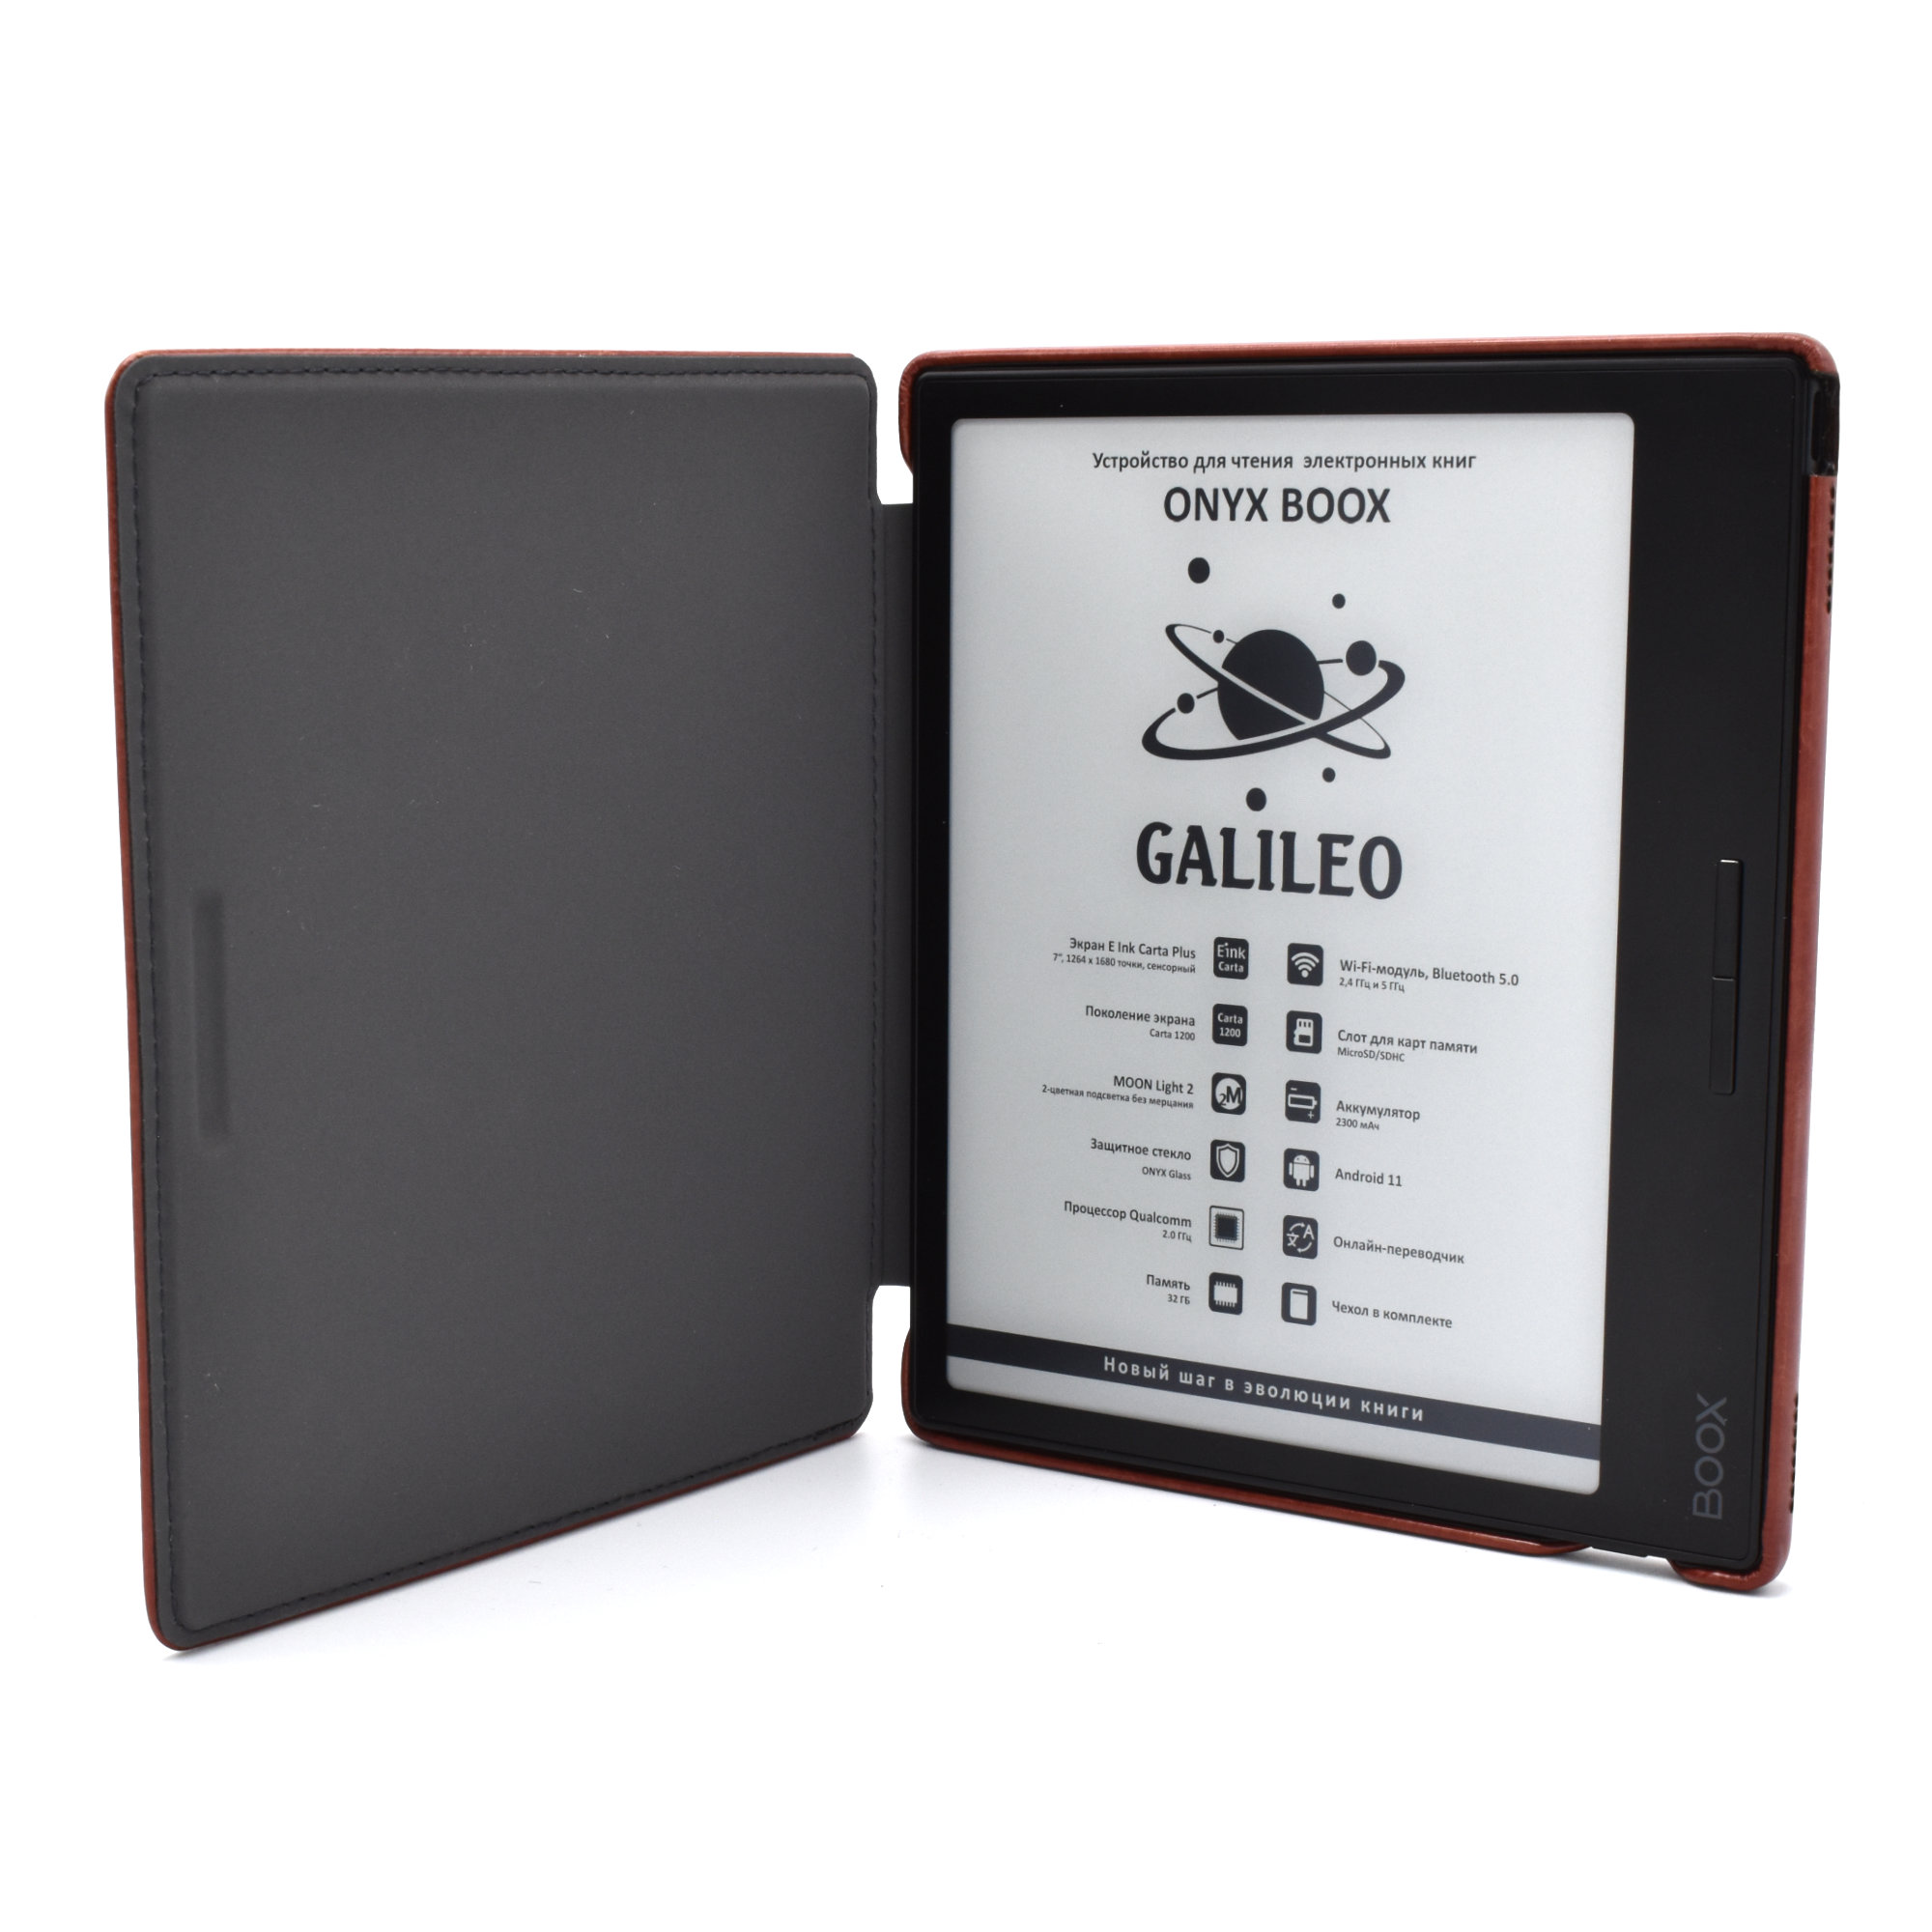 ONYX BOOX Galileo – лучший выбор для комфортного чтения